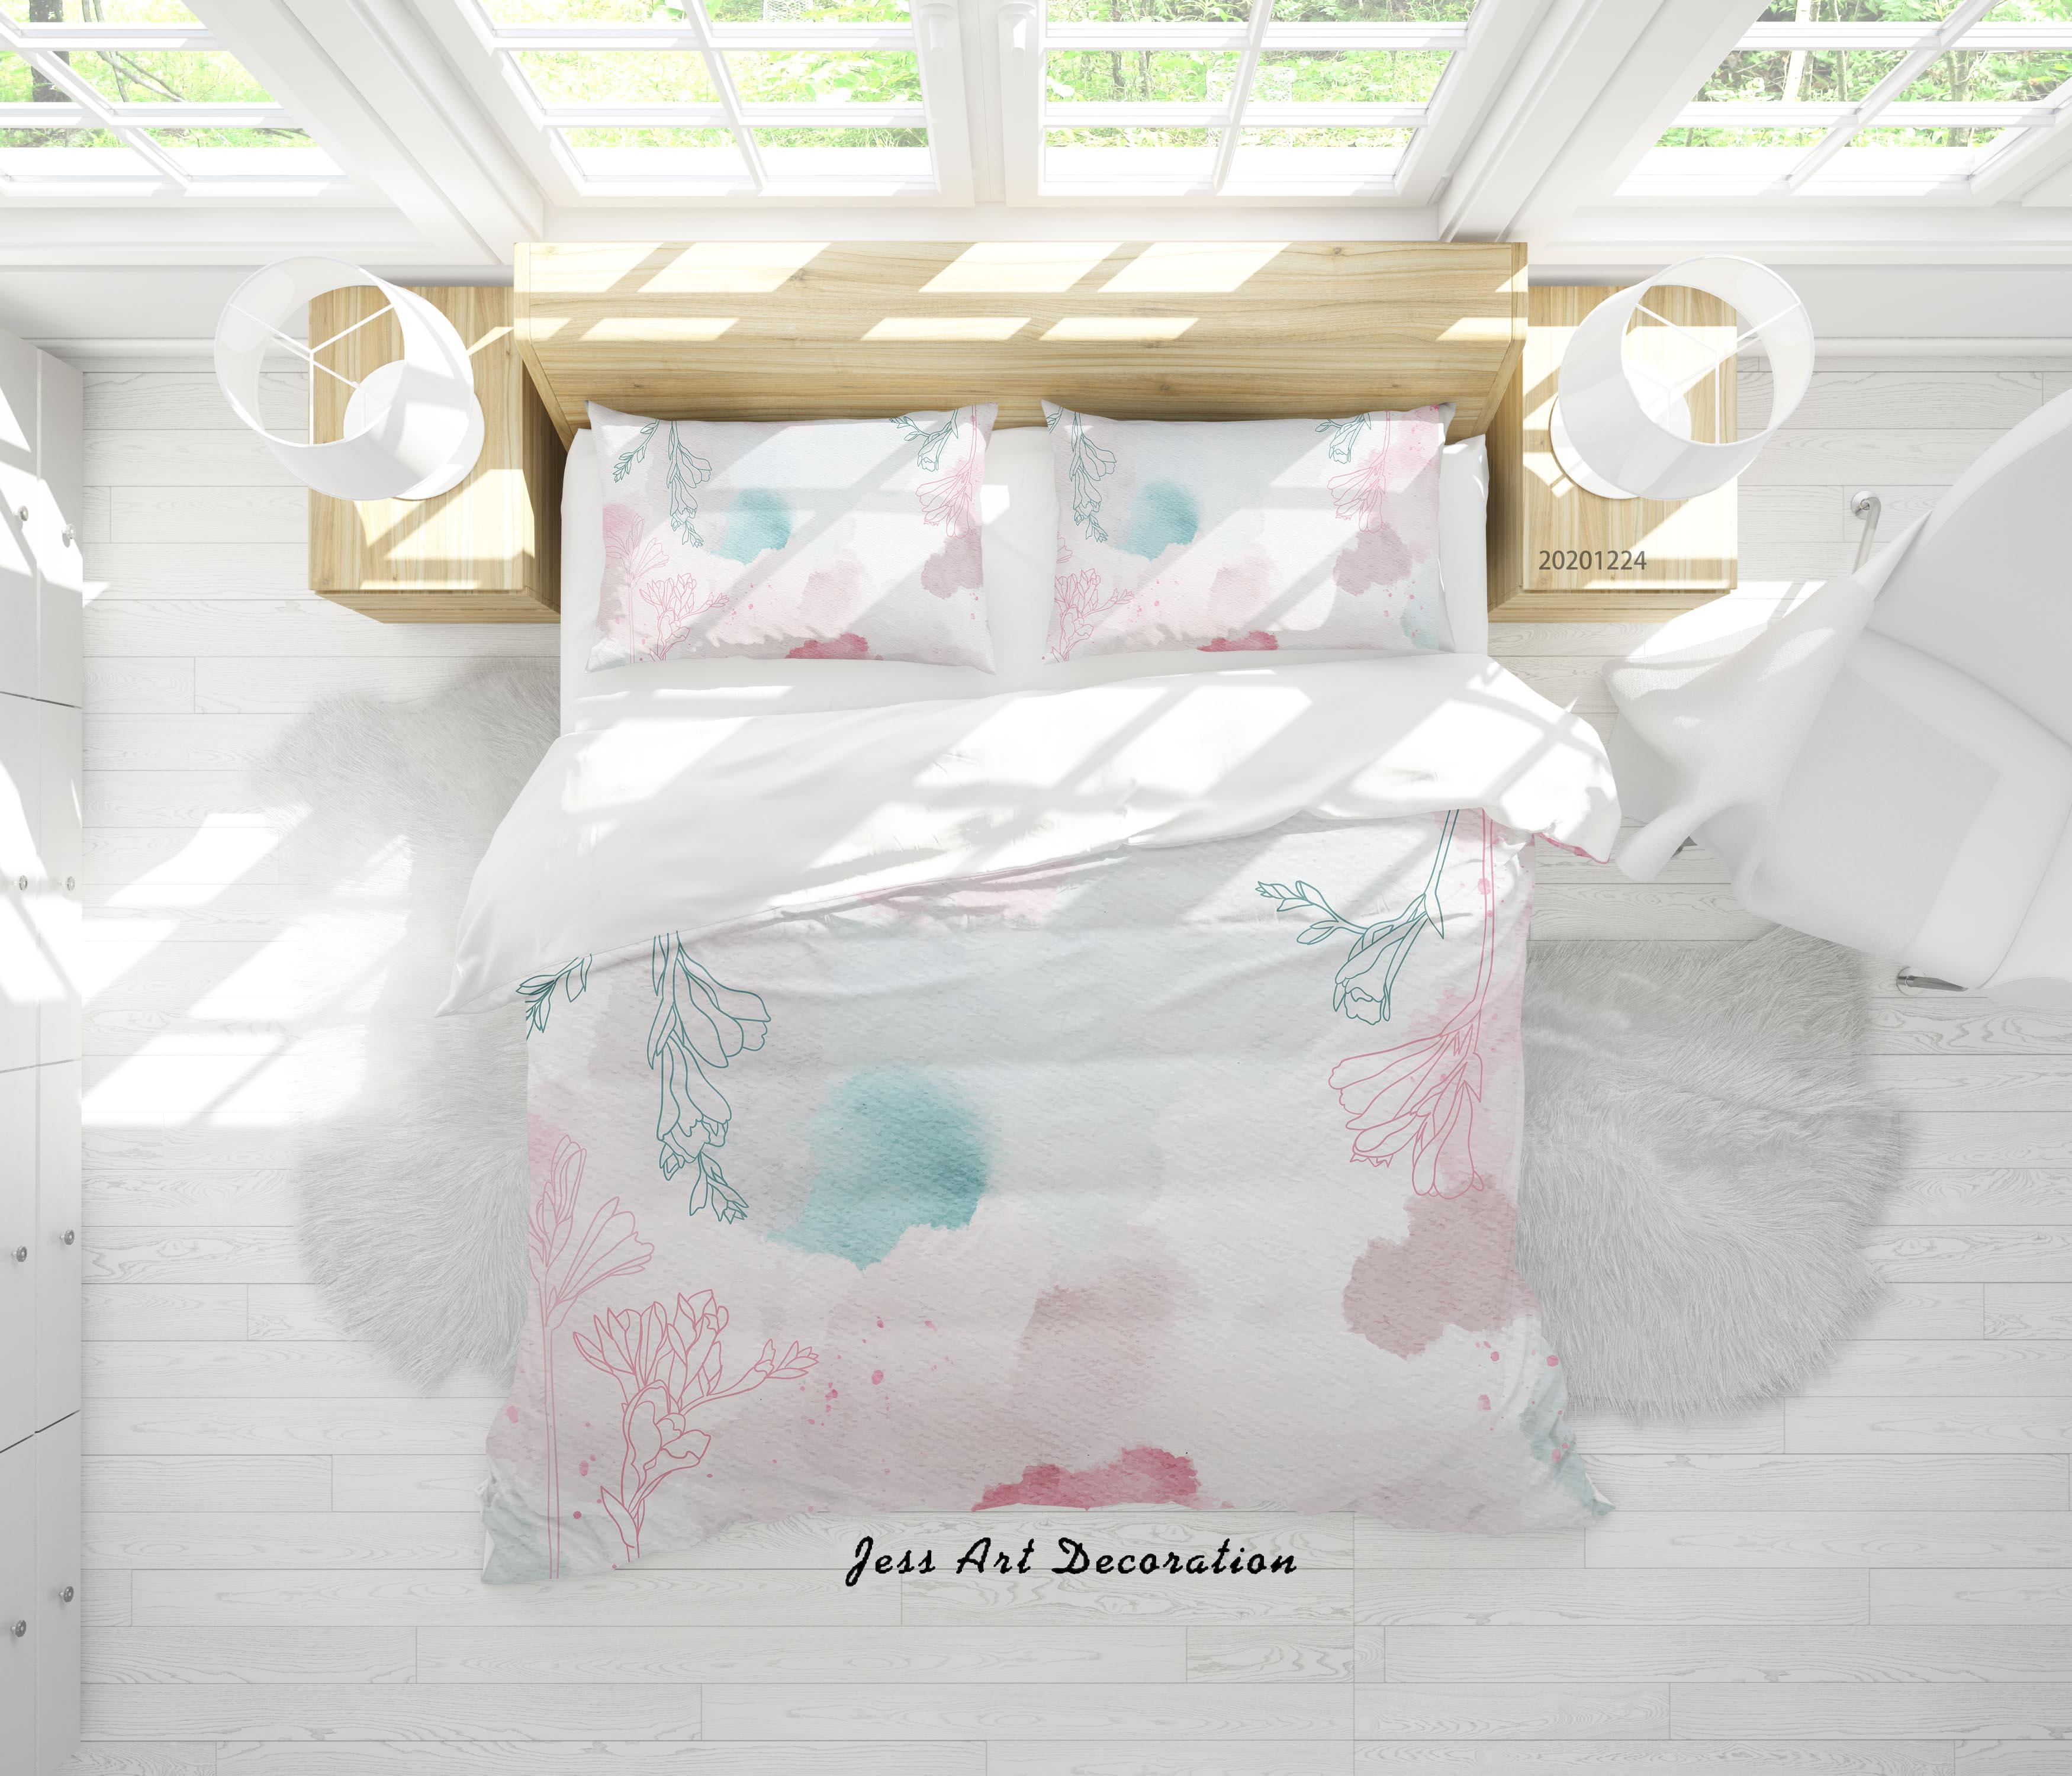 3D Watercolor Pink Floral Quilt Cover Set Bedding Set Duvet Cover Pillowcases 15 LQH- Jess Art Decoration